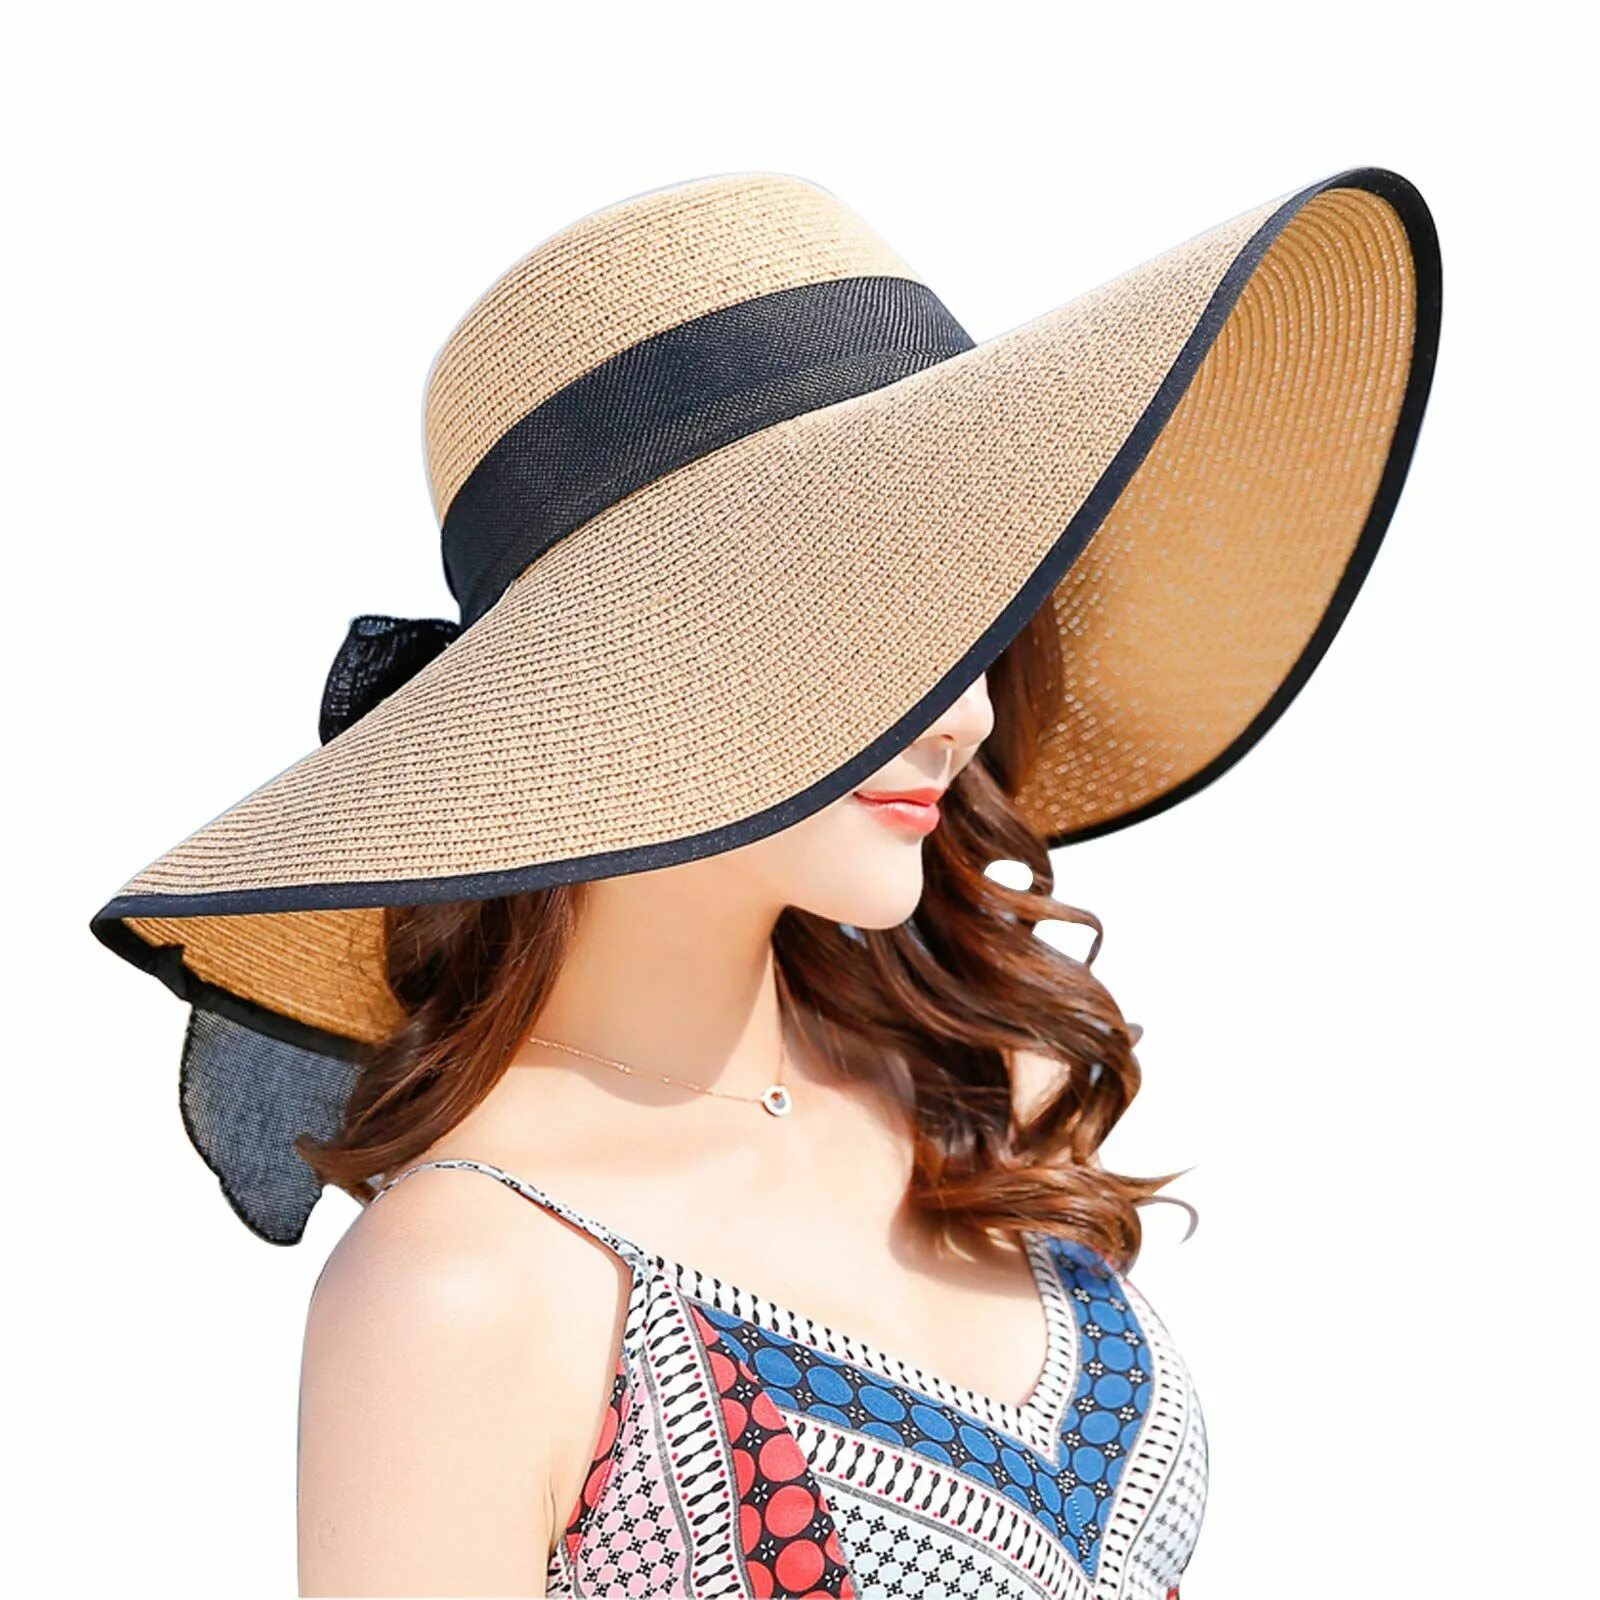 Панама широкополая женская. Широкополая шляпа Панама. Пляжная шляпа. Летняя шляпа. Солнечная шляпа